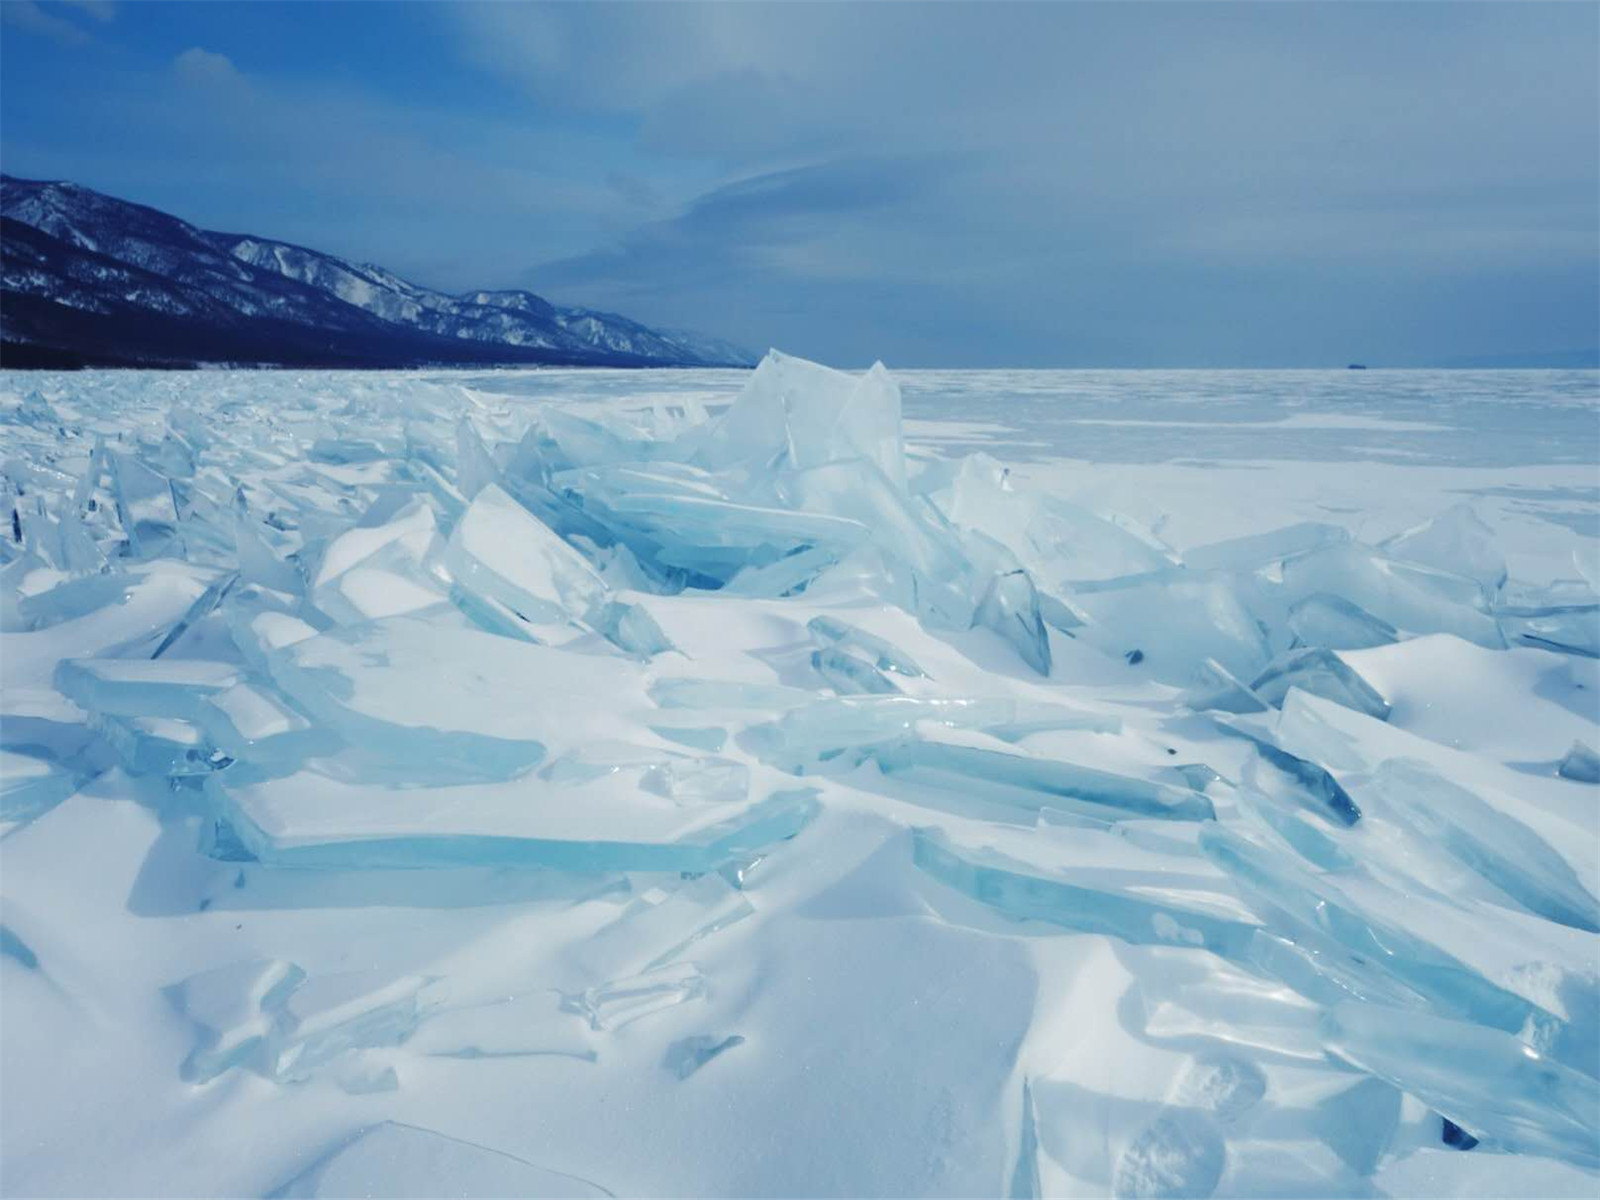 一场说走就走的贝加尔湖蓝冰之旅_行摄天下-摄影站